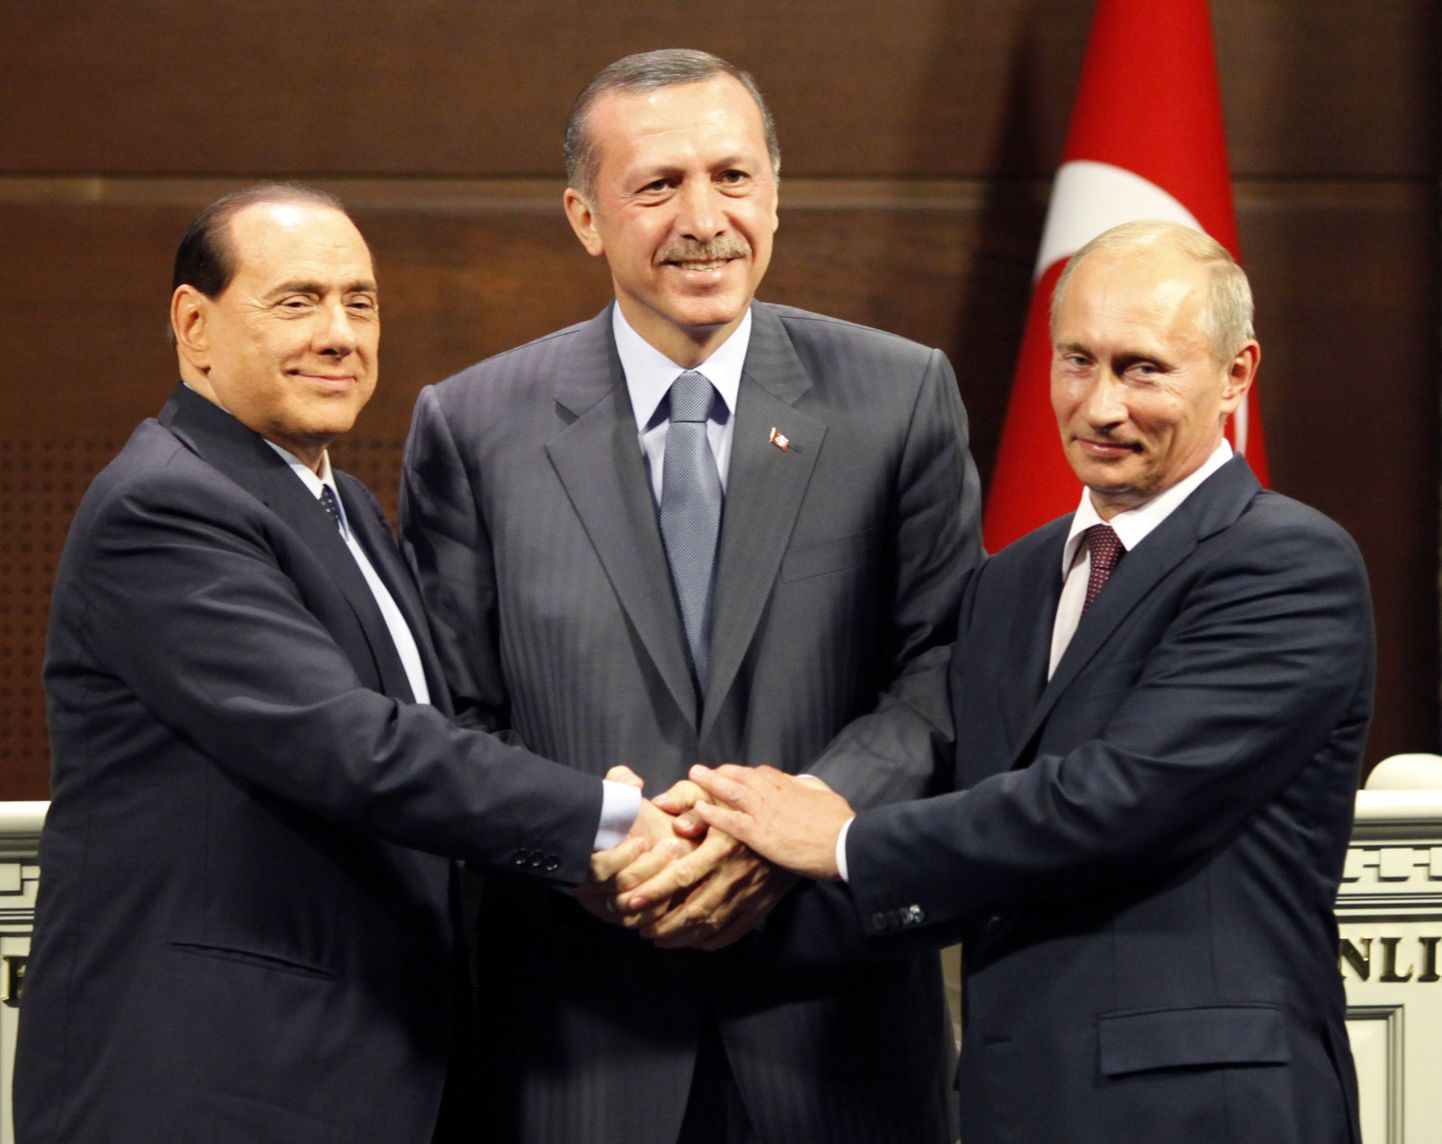 Õnnepäevil: Silvio Berlusconi, Recep Tayyip Erdoğan ja Vladimir Putin 2009. aastal Ankaras.